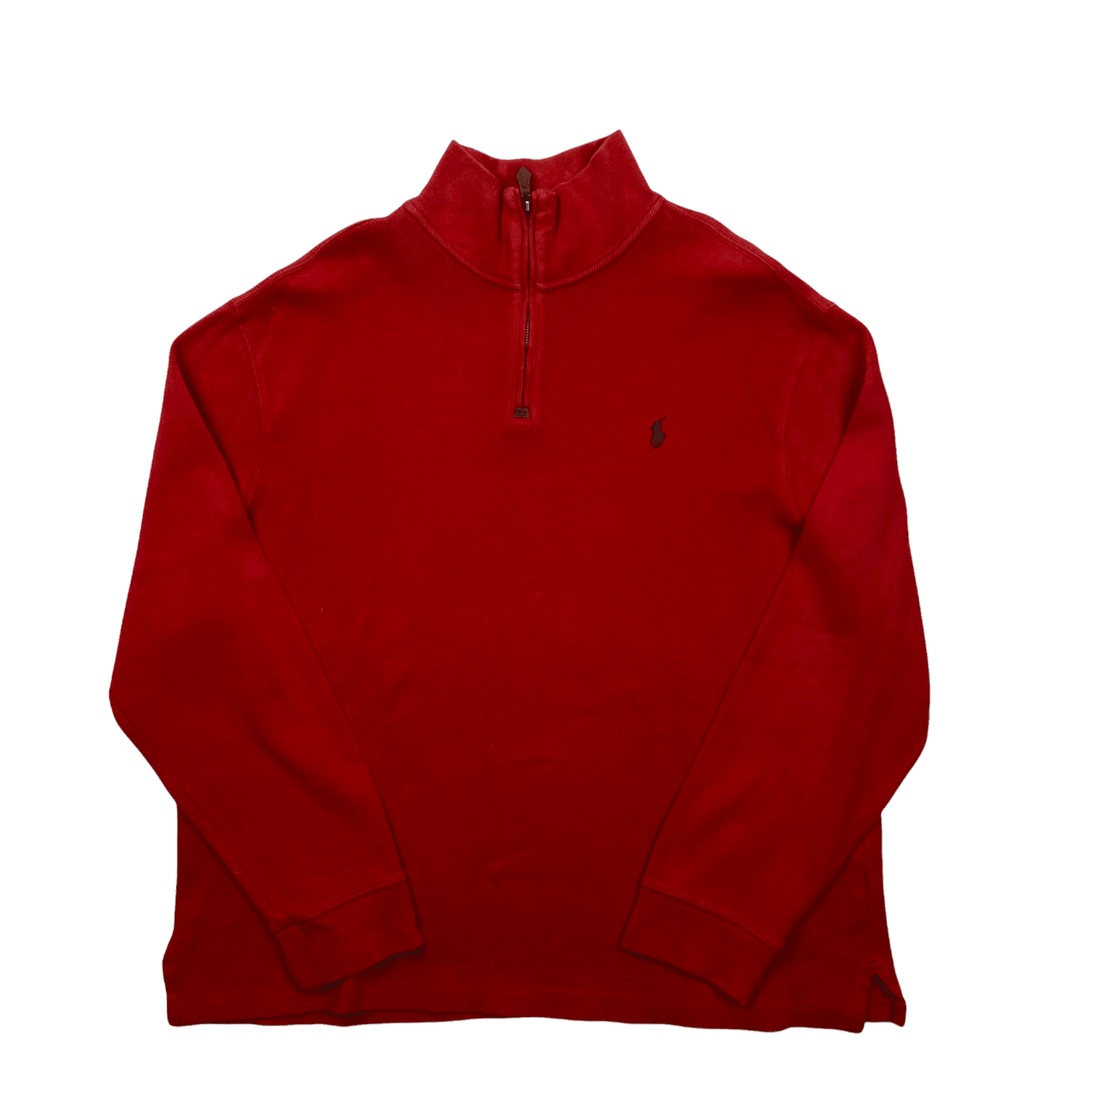 Vintage 90s Red Polo Ralph Lauren Quarter Zip Sweatshirt - Extra Large - The Streetwear Studio